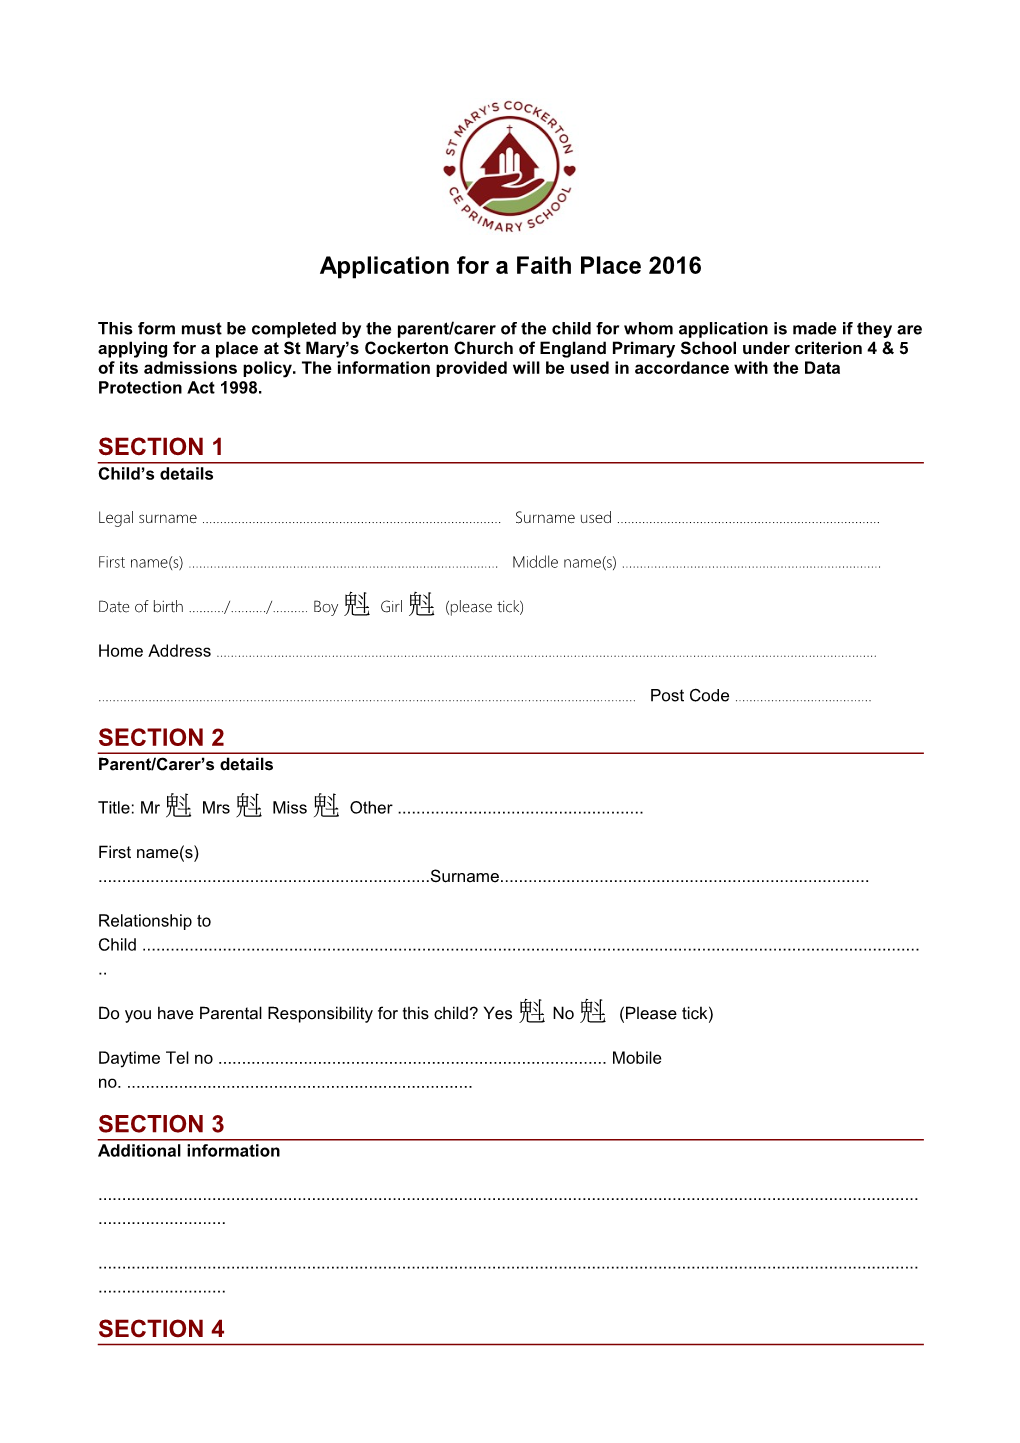 Application for a Faith Place 2016